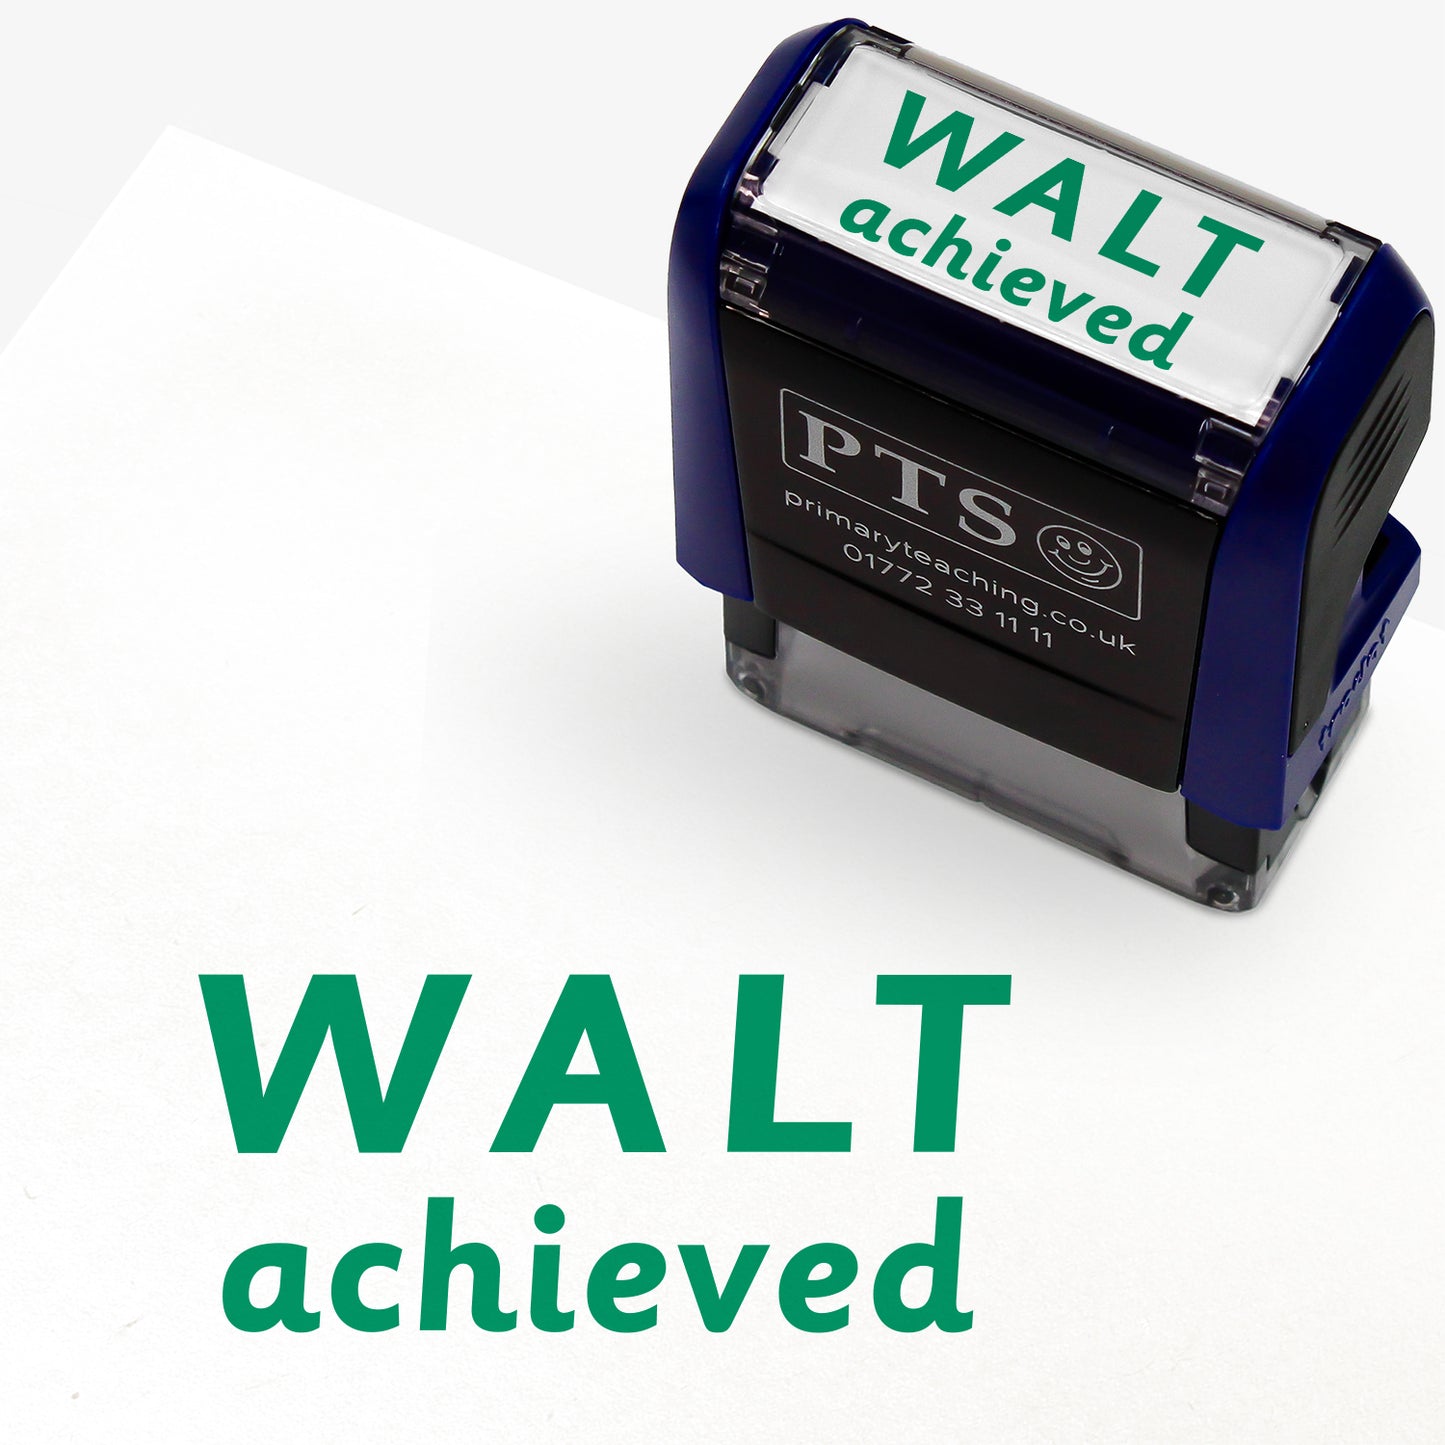 Walt Achieved Stamper - 38 x 15mm